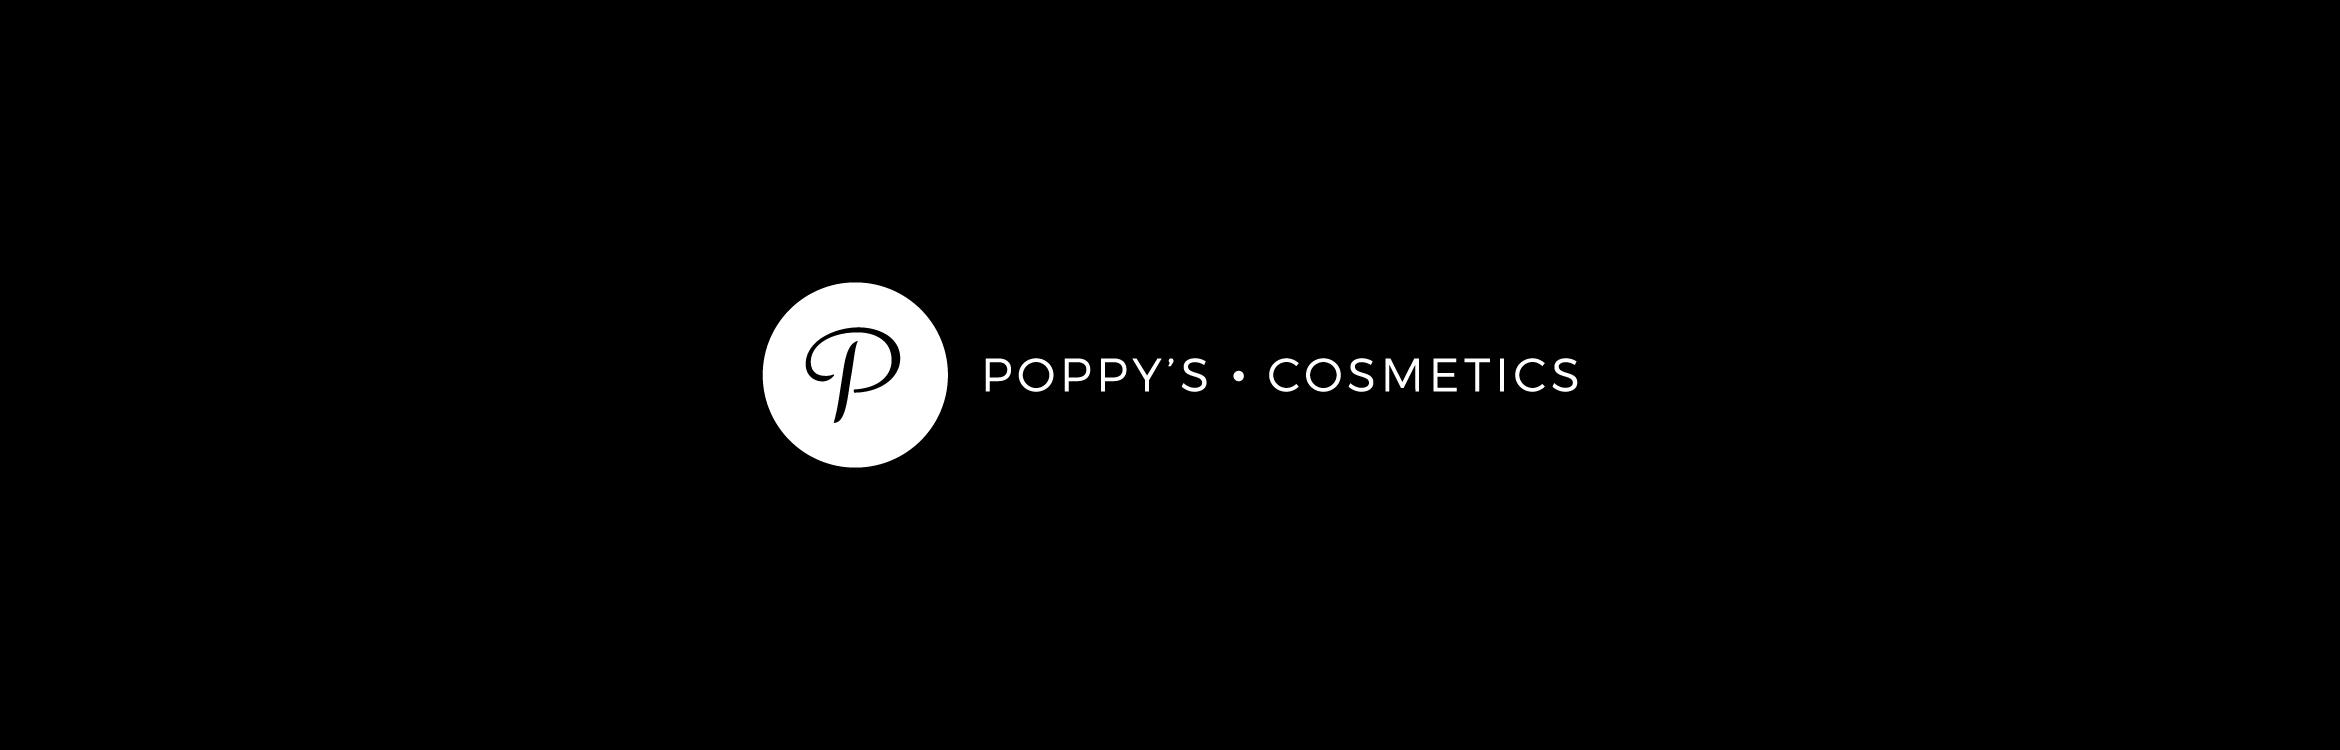 Poppy's Cosmetics